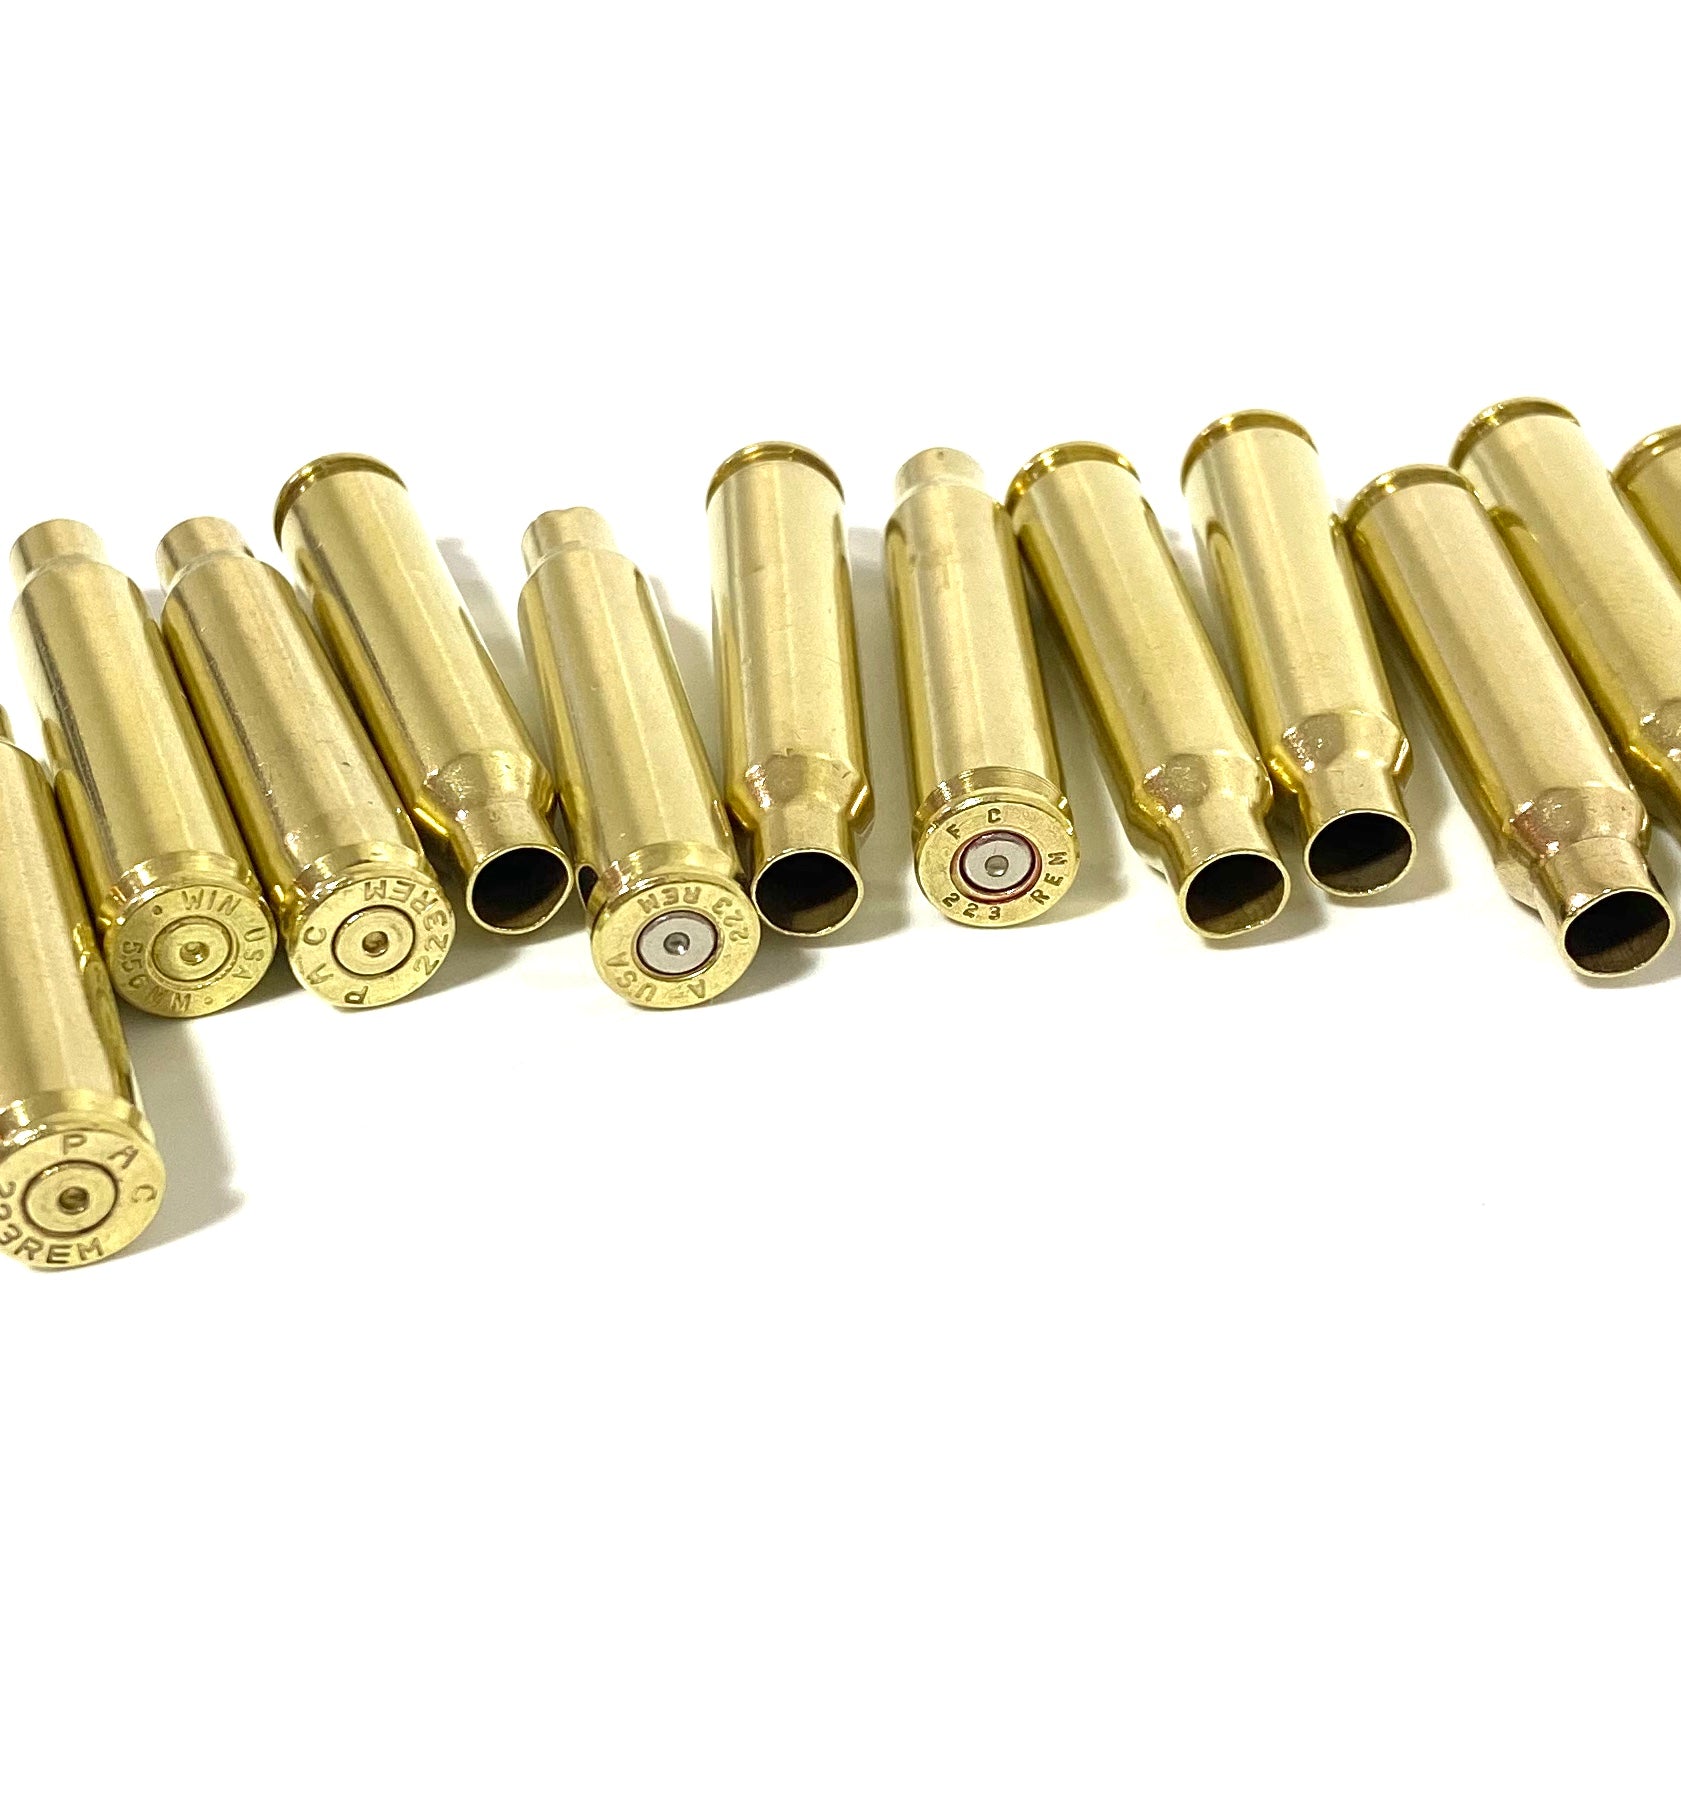 Empty Rifle Shell Casings by Stocksy Contributor Matthew Spaulding -  Stocksy